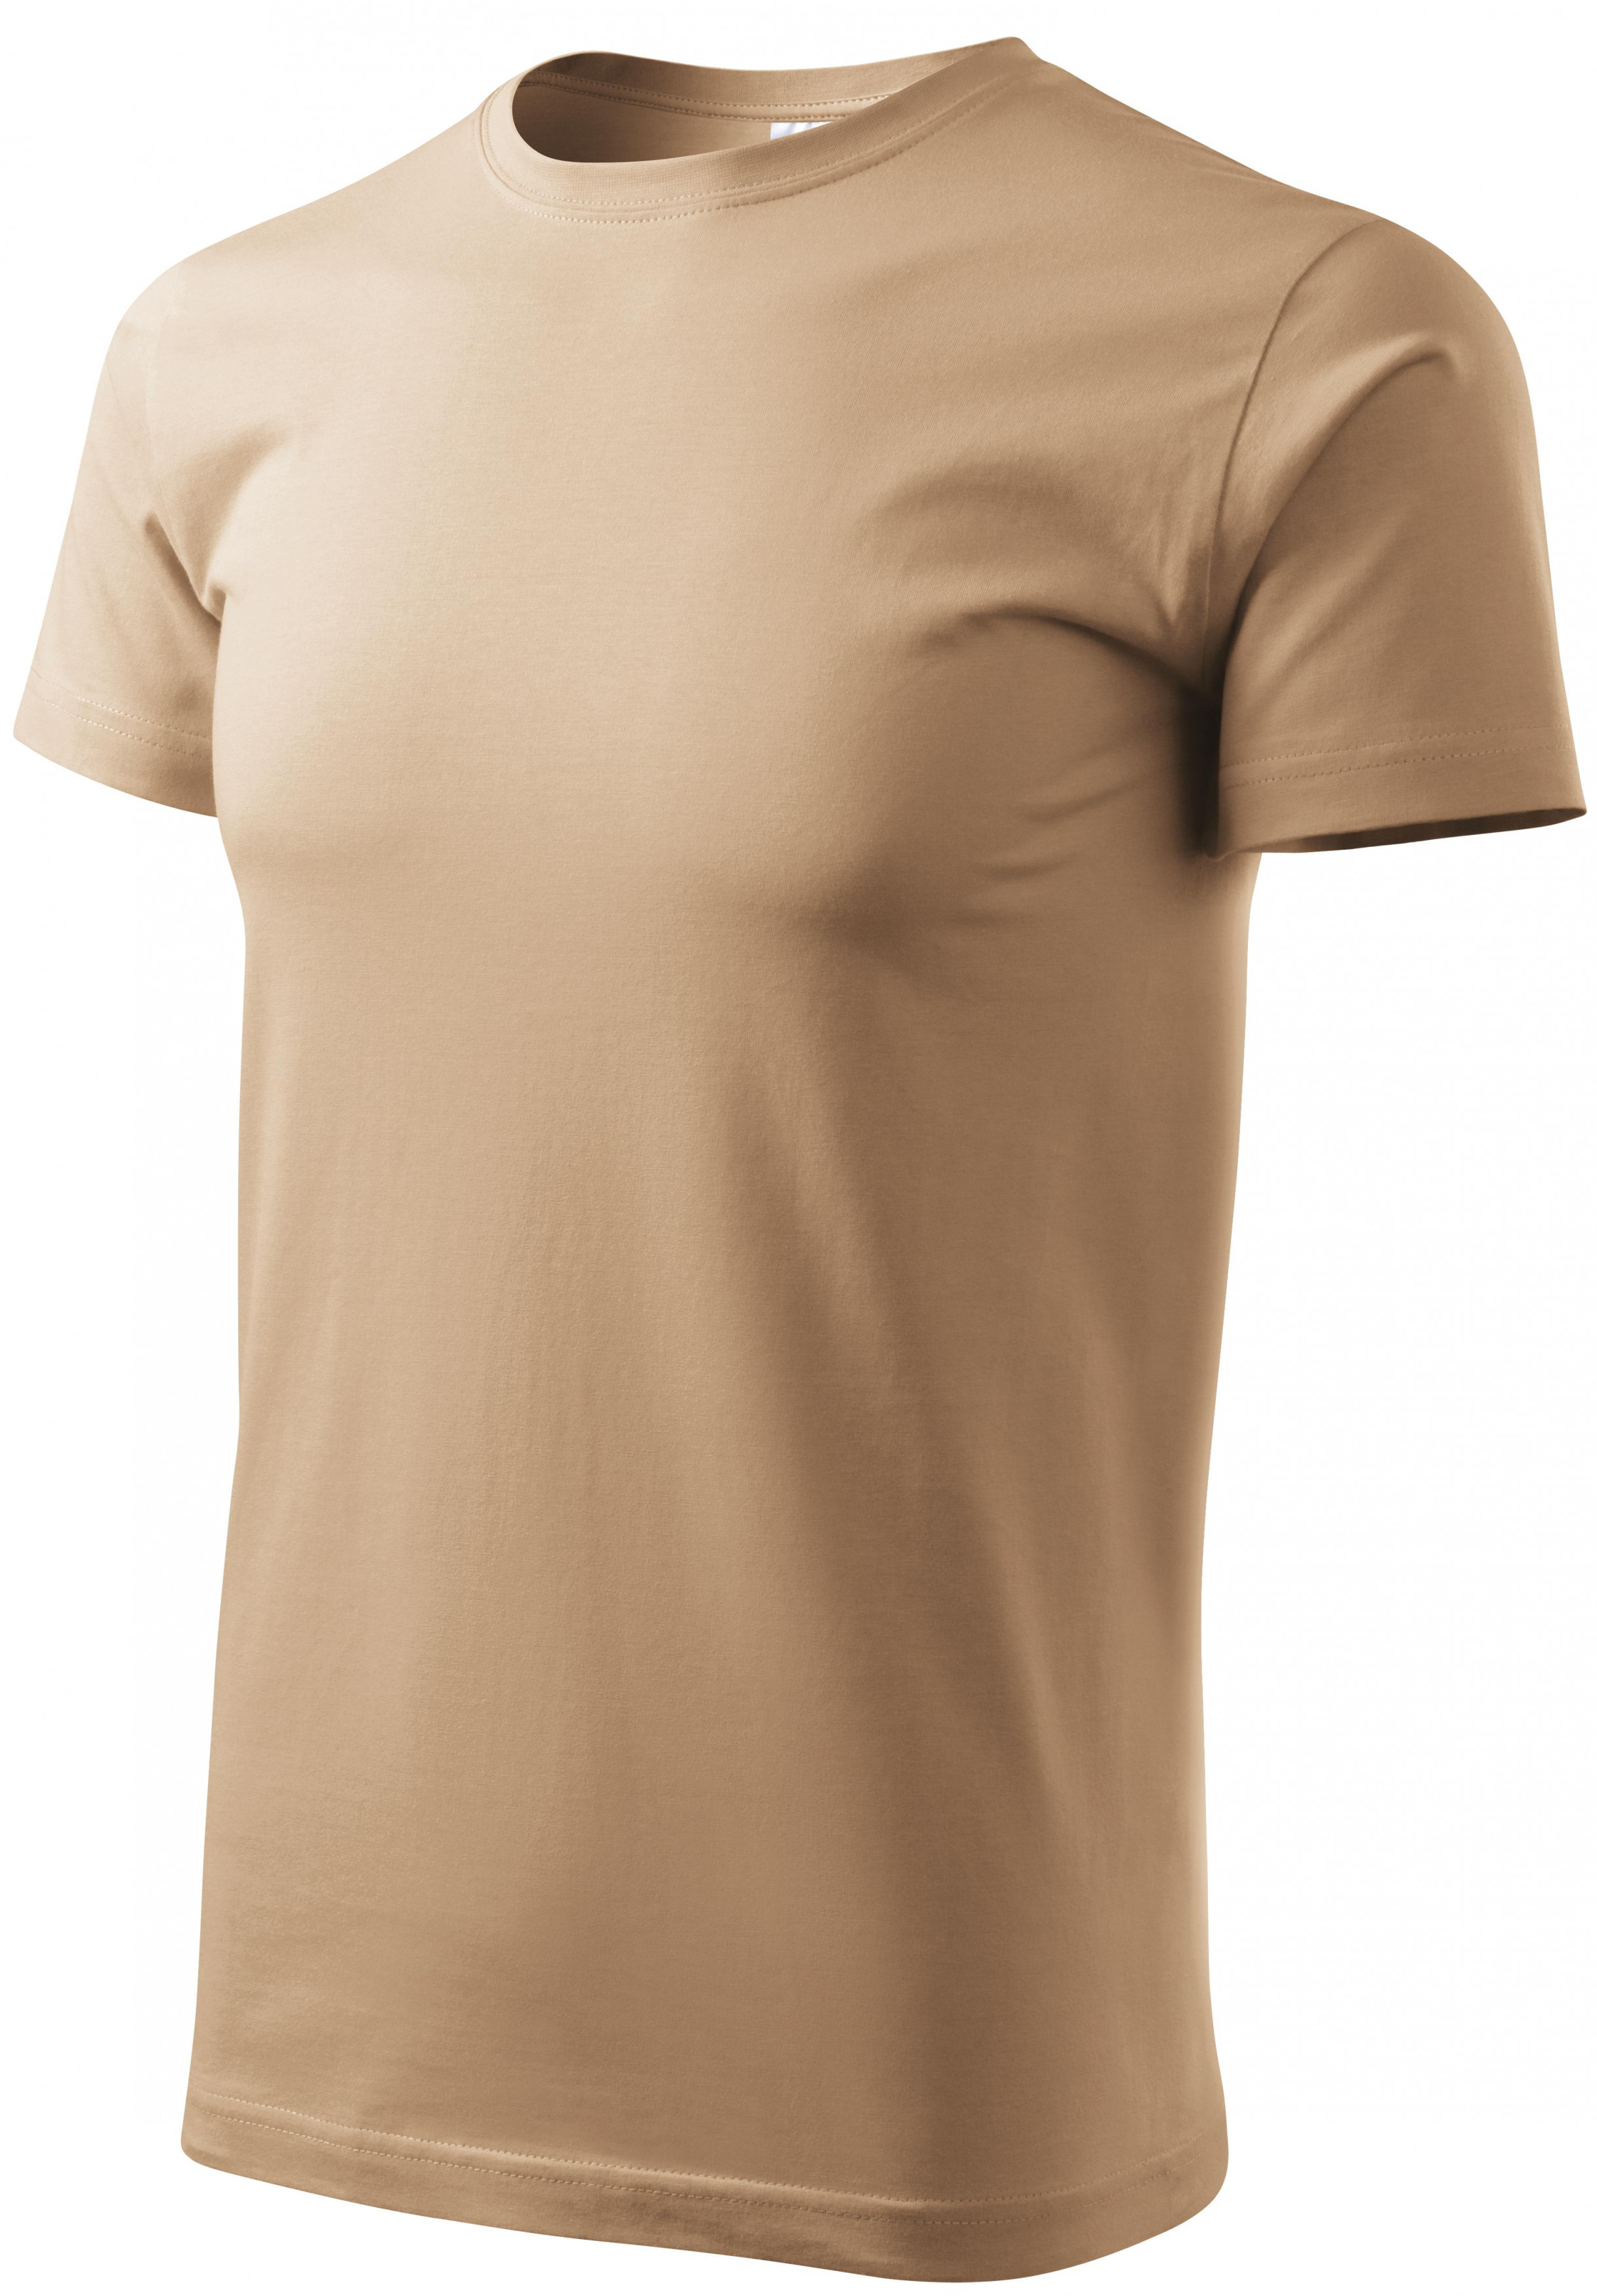 Pánske tričko jednoduché, piesková, 2XL